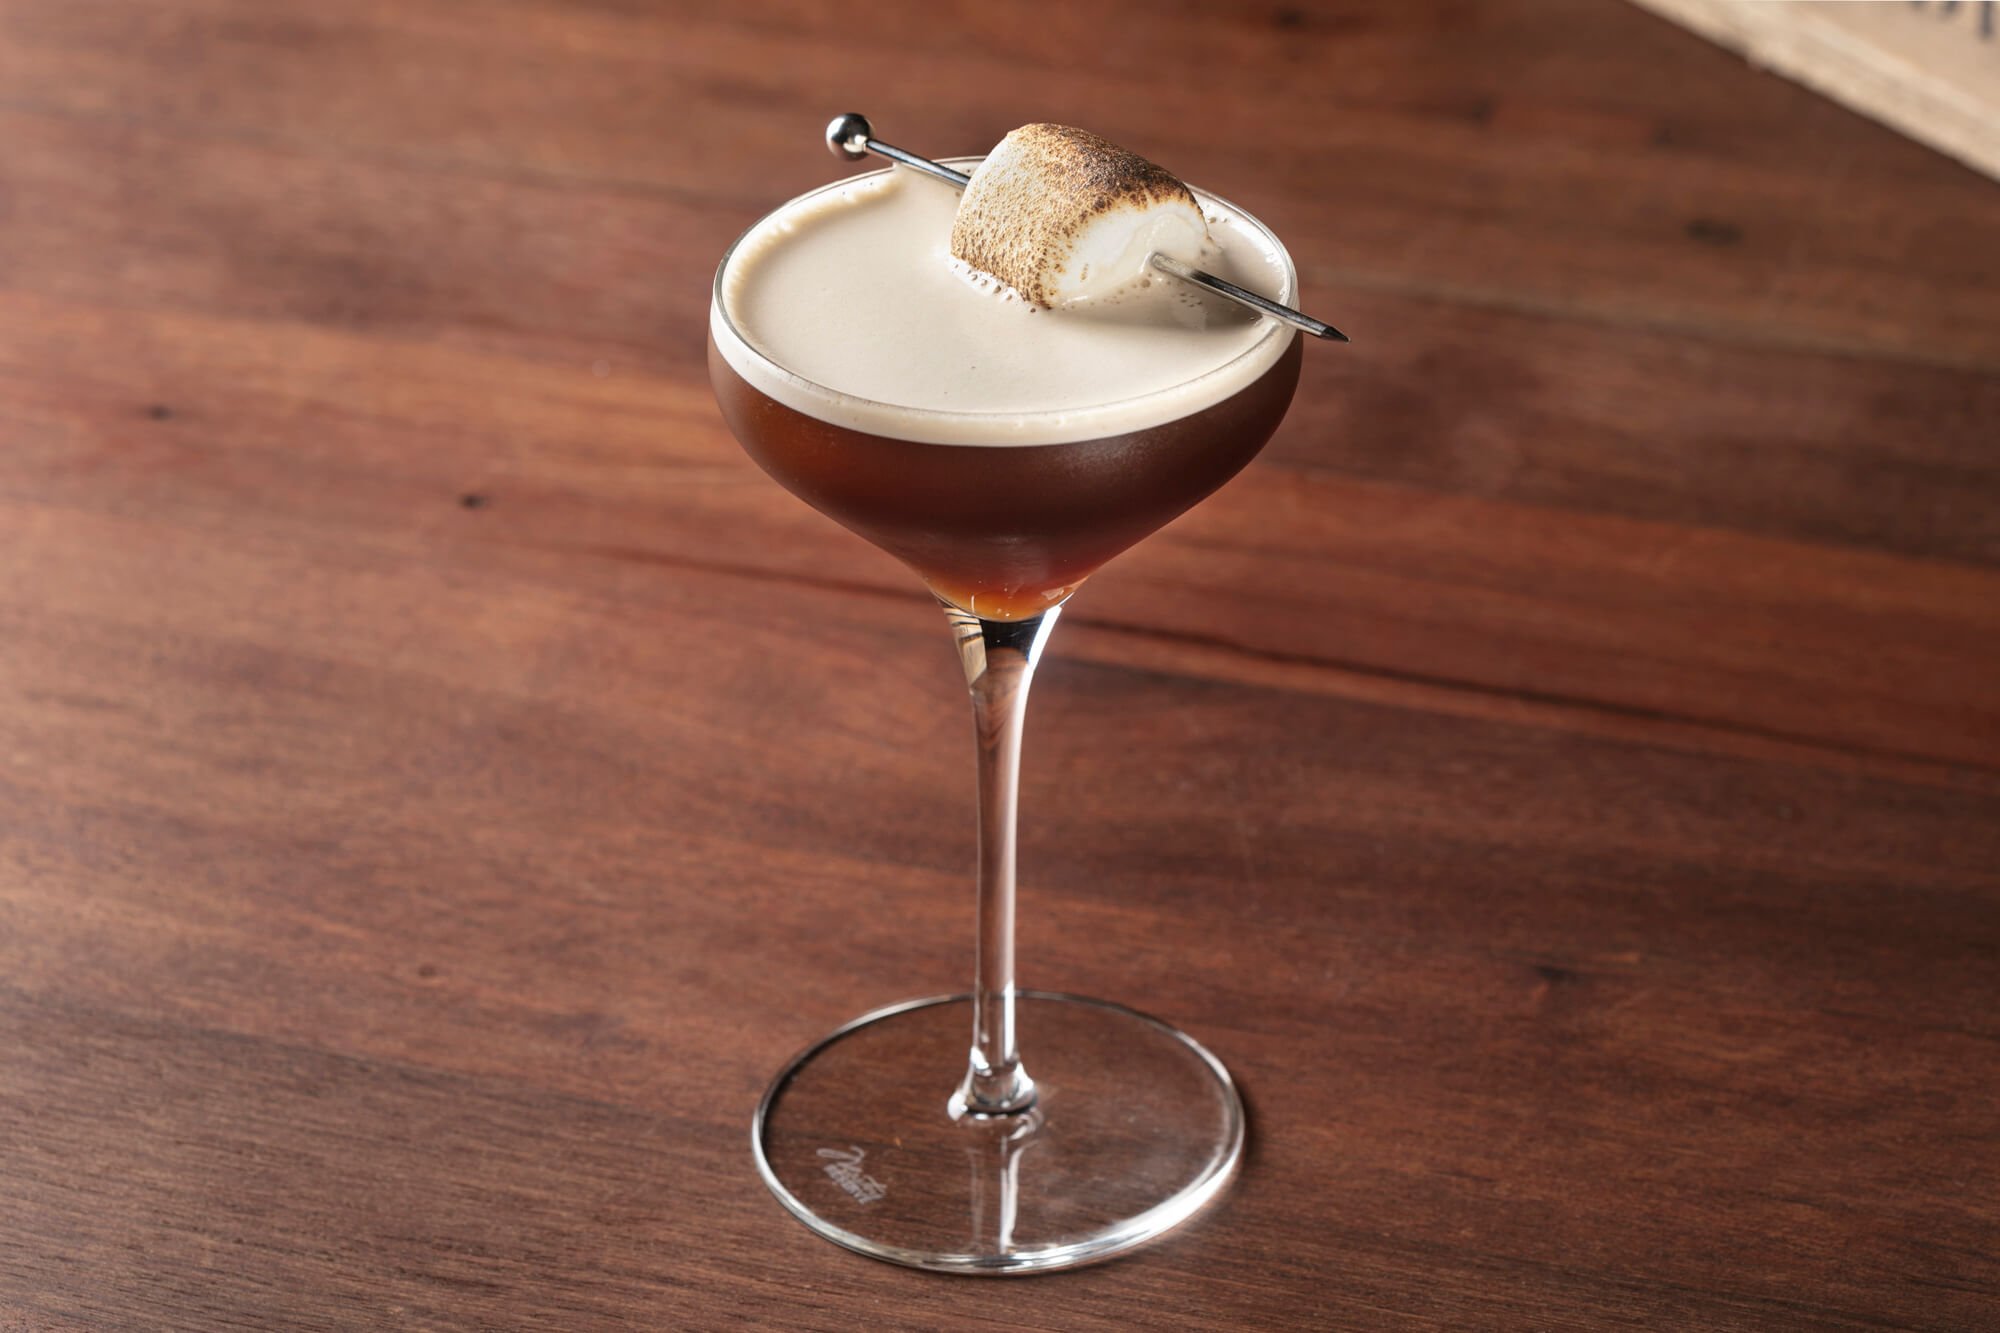 Volcan de Mi Tierra Espresso Martini cocktail